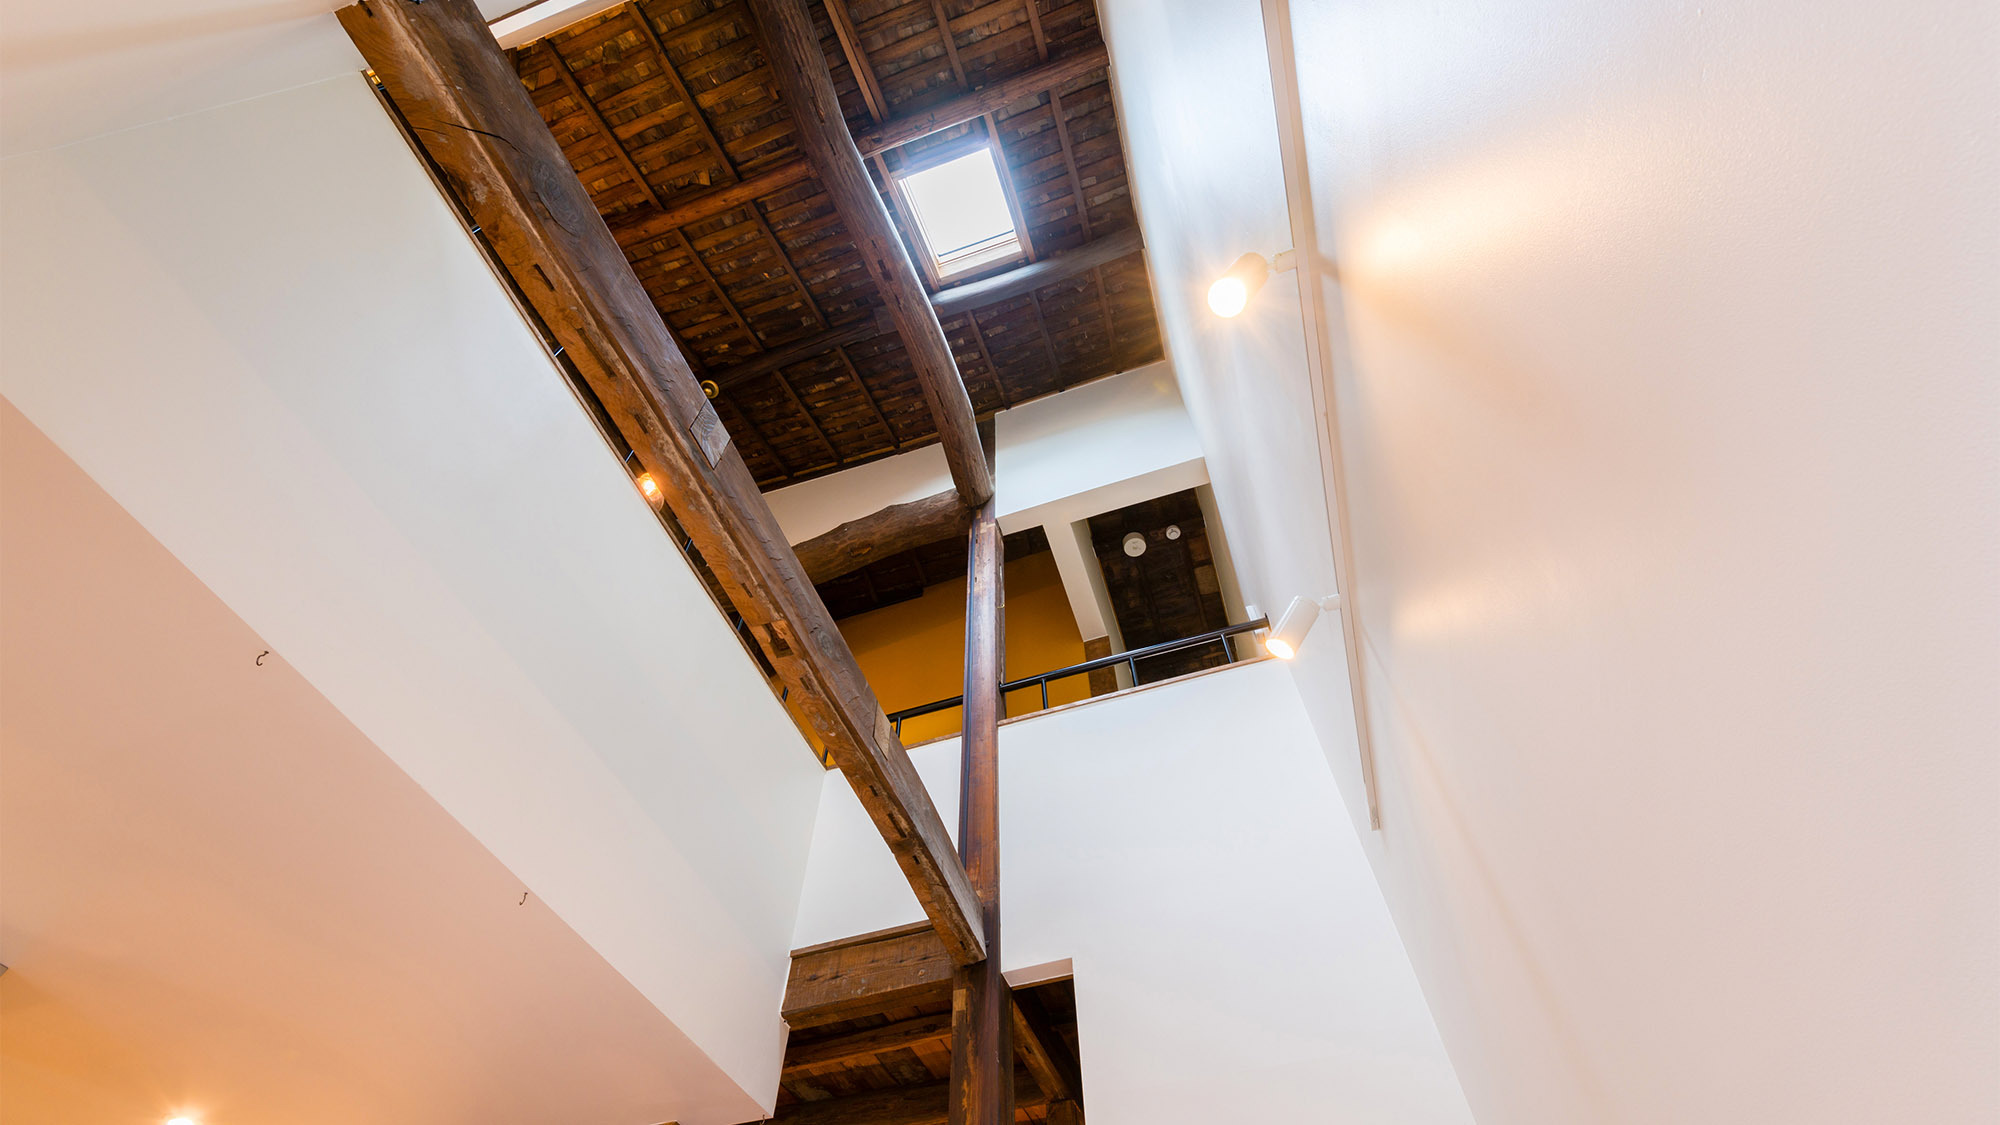 ・1階から2階の天井までの吹き抜け。天井や梁は昔の木材をそのまま使用しレトロな雰囲気に